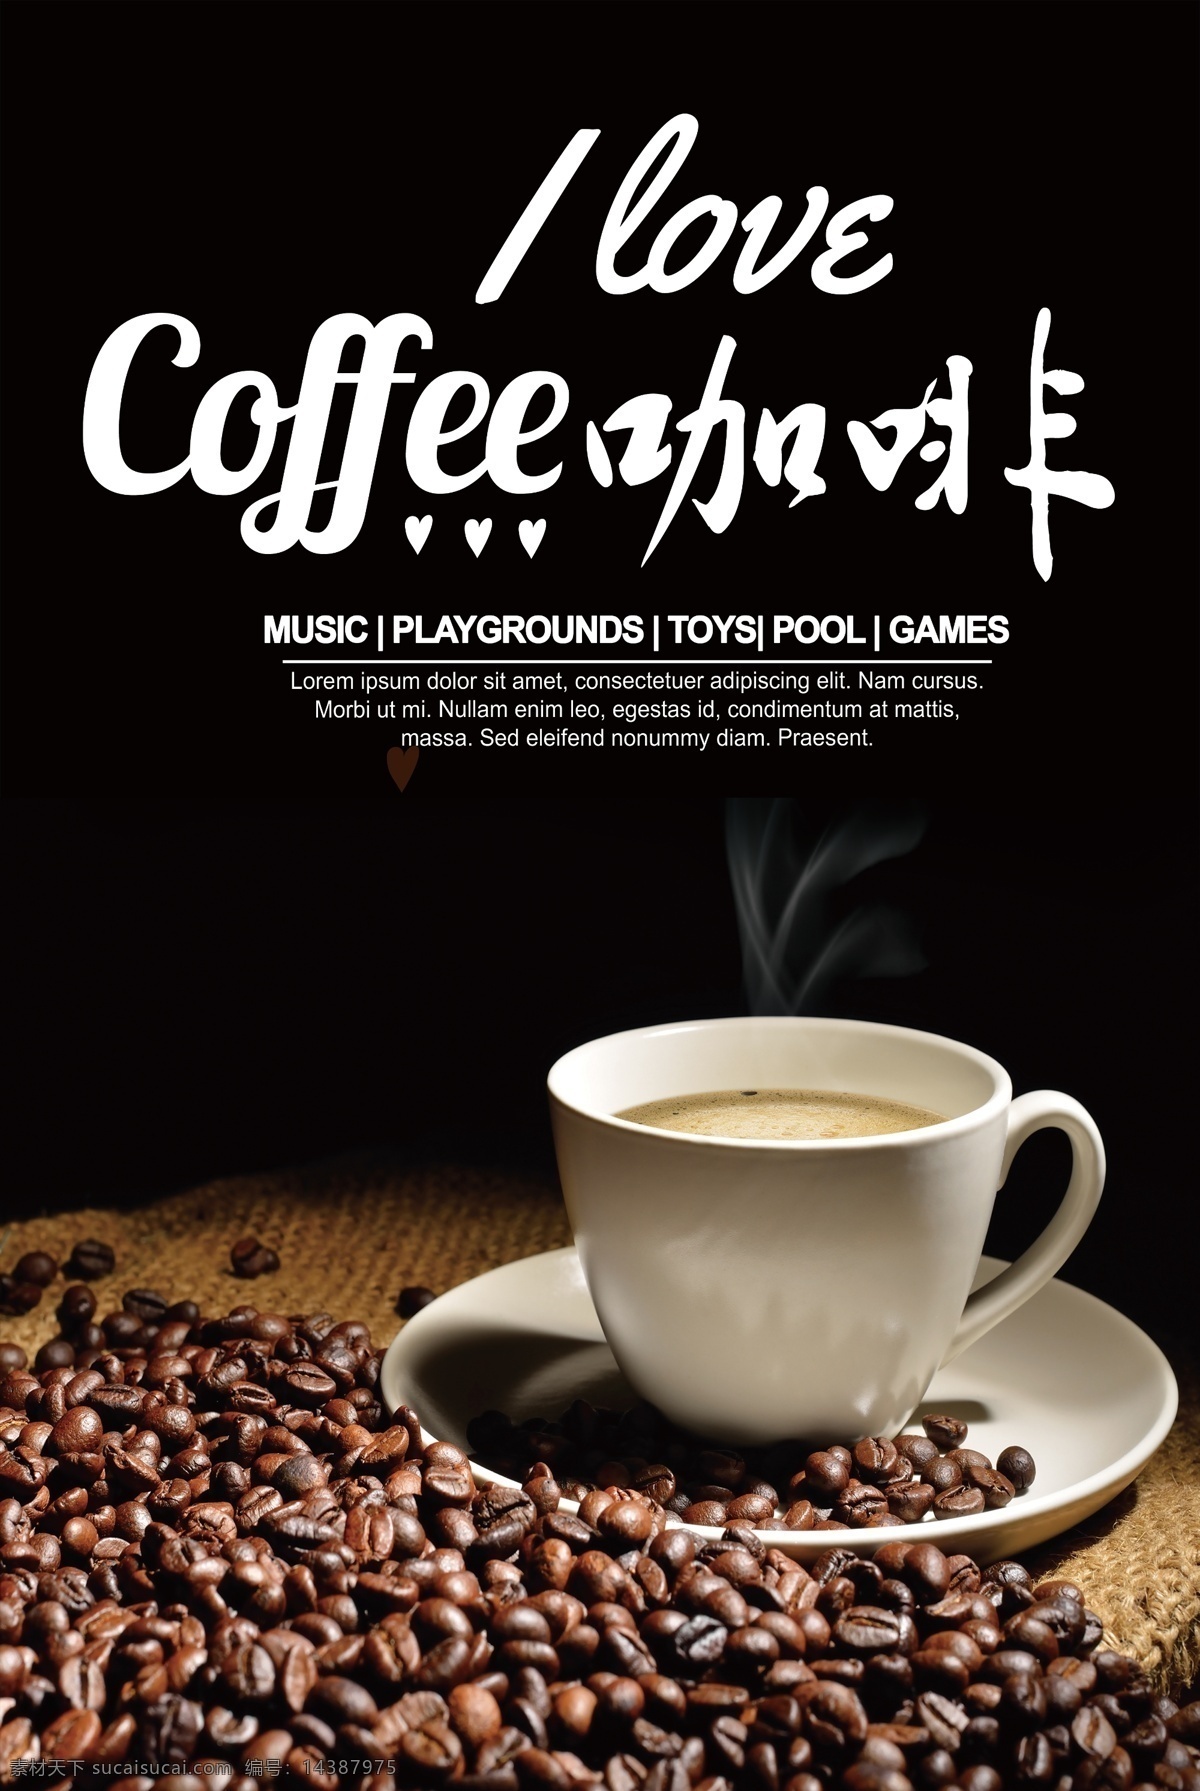 黑底 背景 咖啡 海报 广告 咖啡海报 高清 模板 餐饮美食 咖啡宣传海报 宣传单 咖啡背景 黑底背景